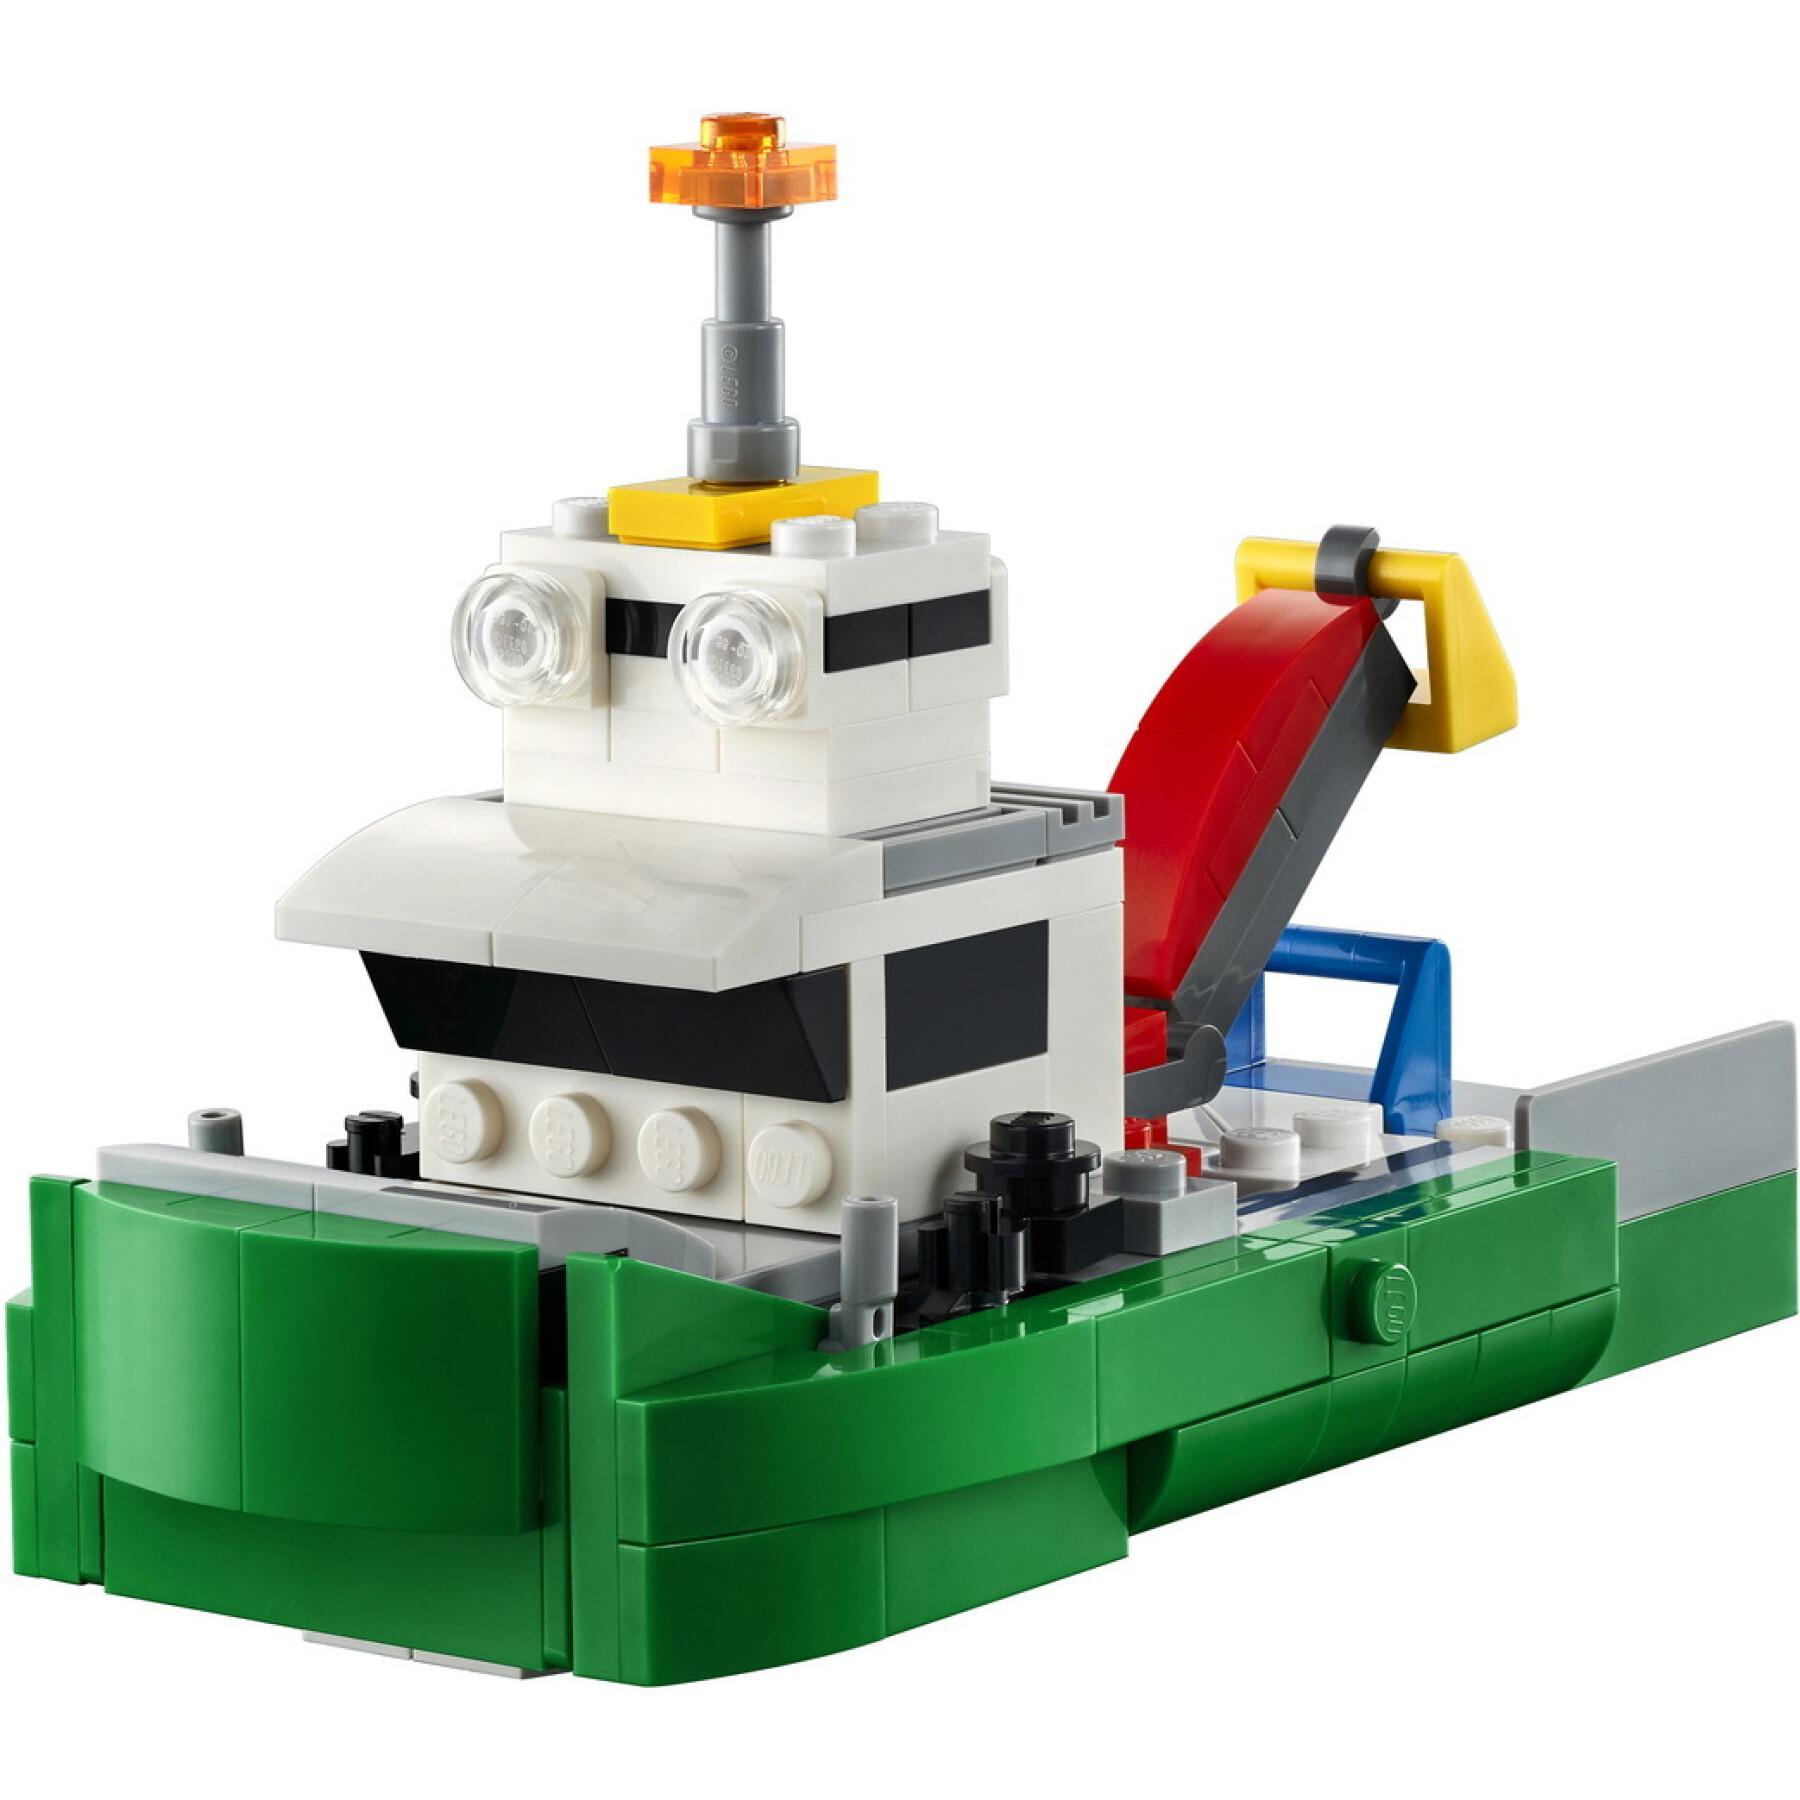 Transporter pojazdów wyścigowych Lego Creator